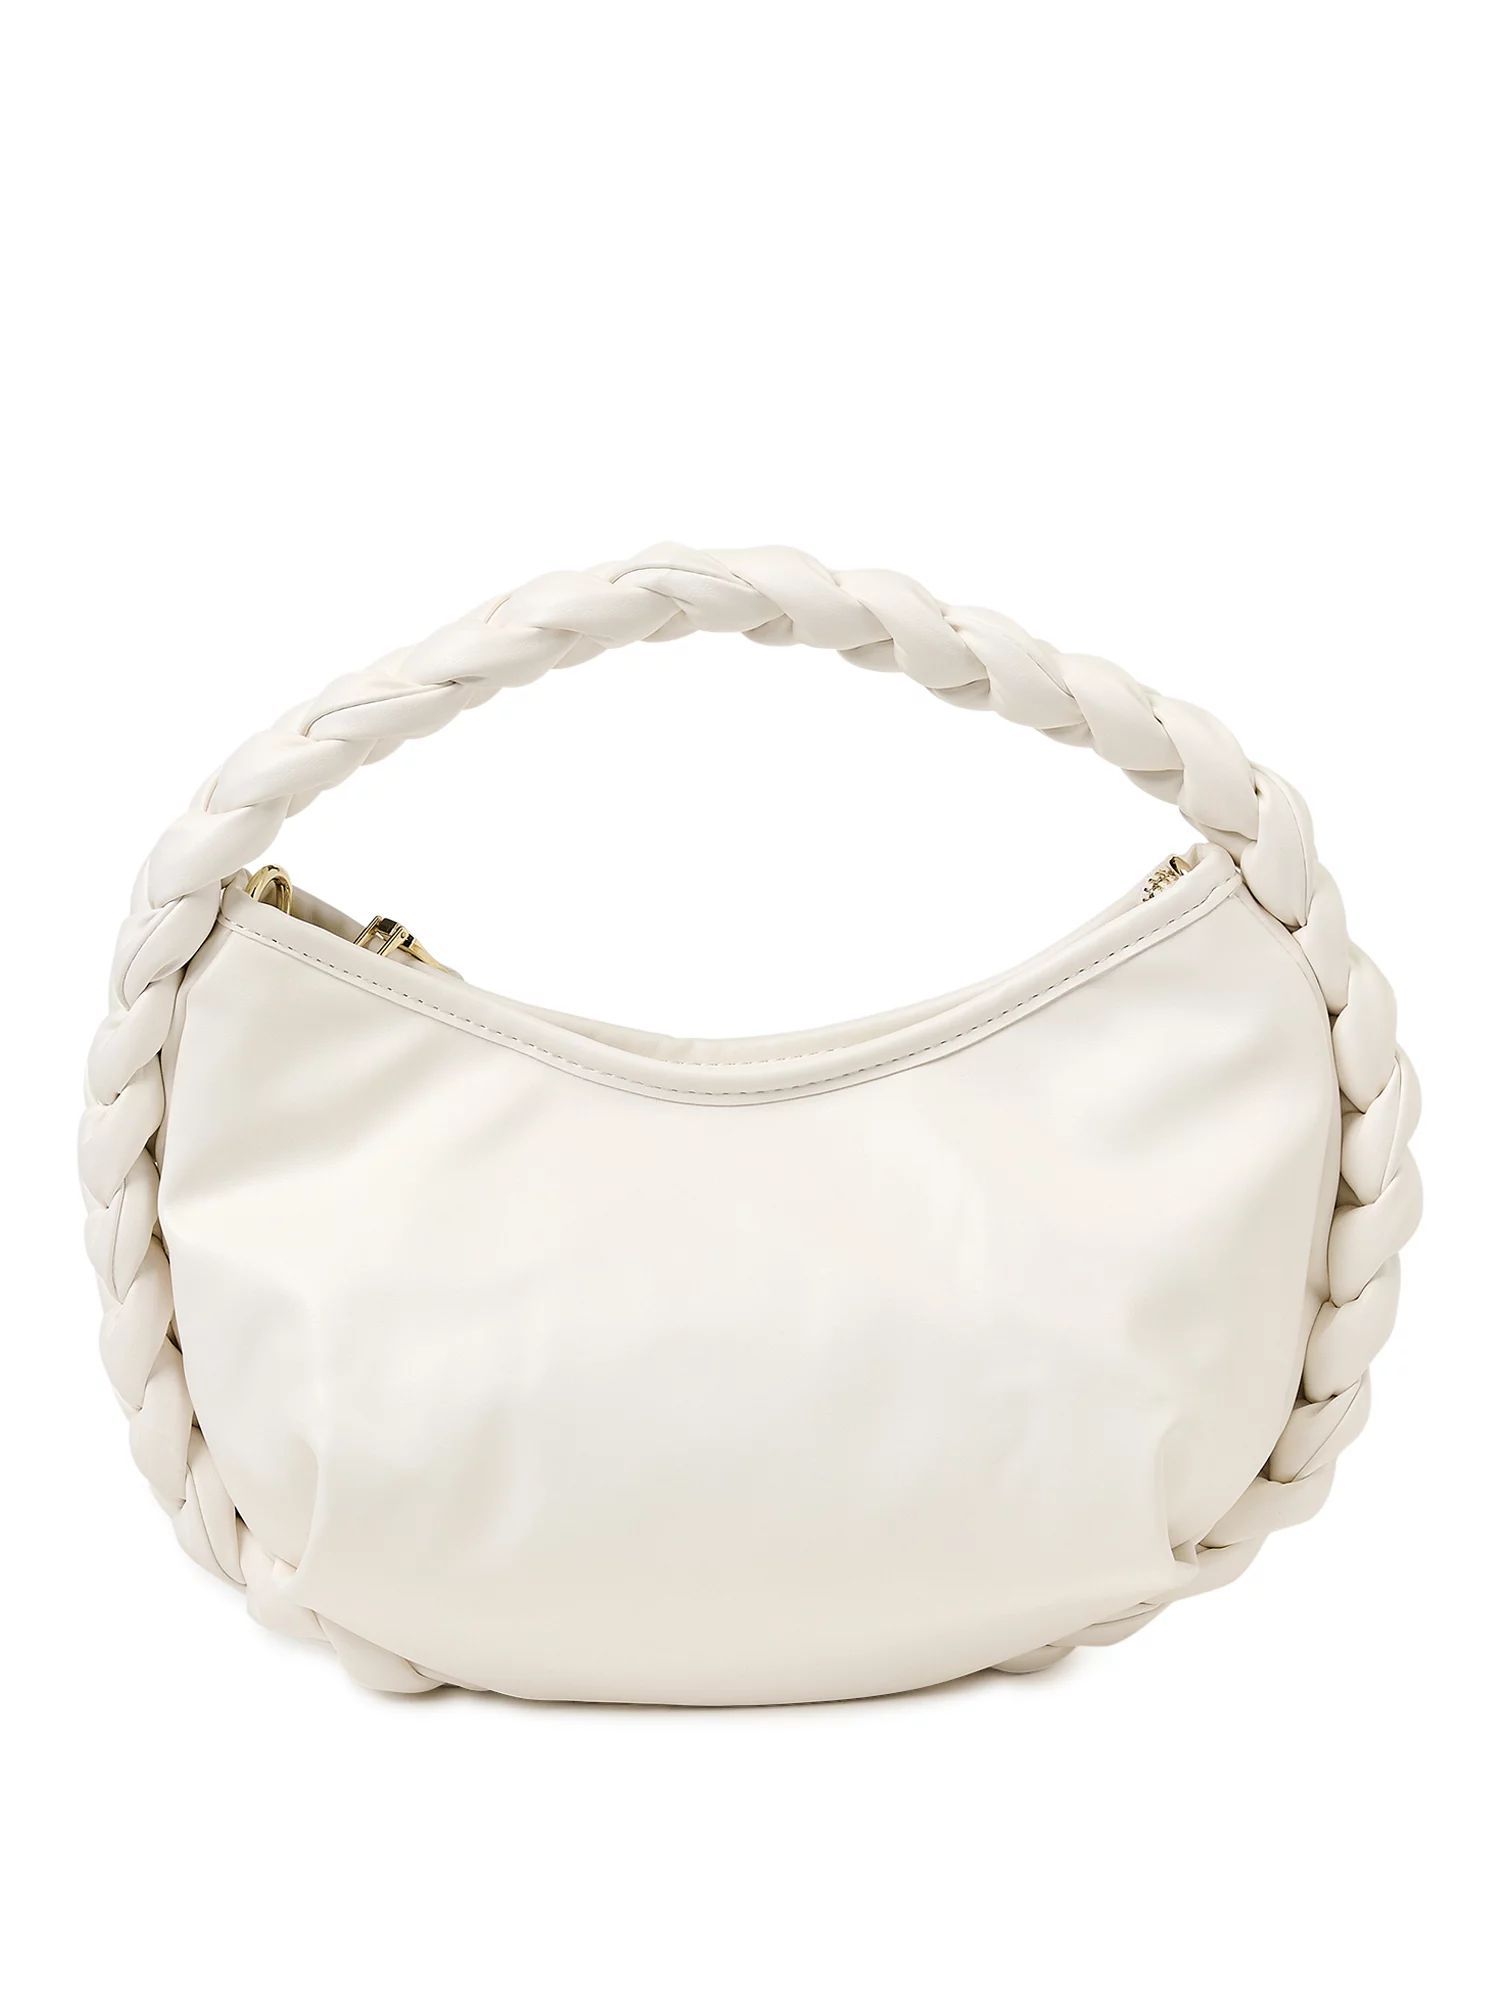 Madden NYC Women’s Braided Crossbody Bag White | Walmart (US)